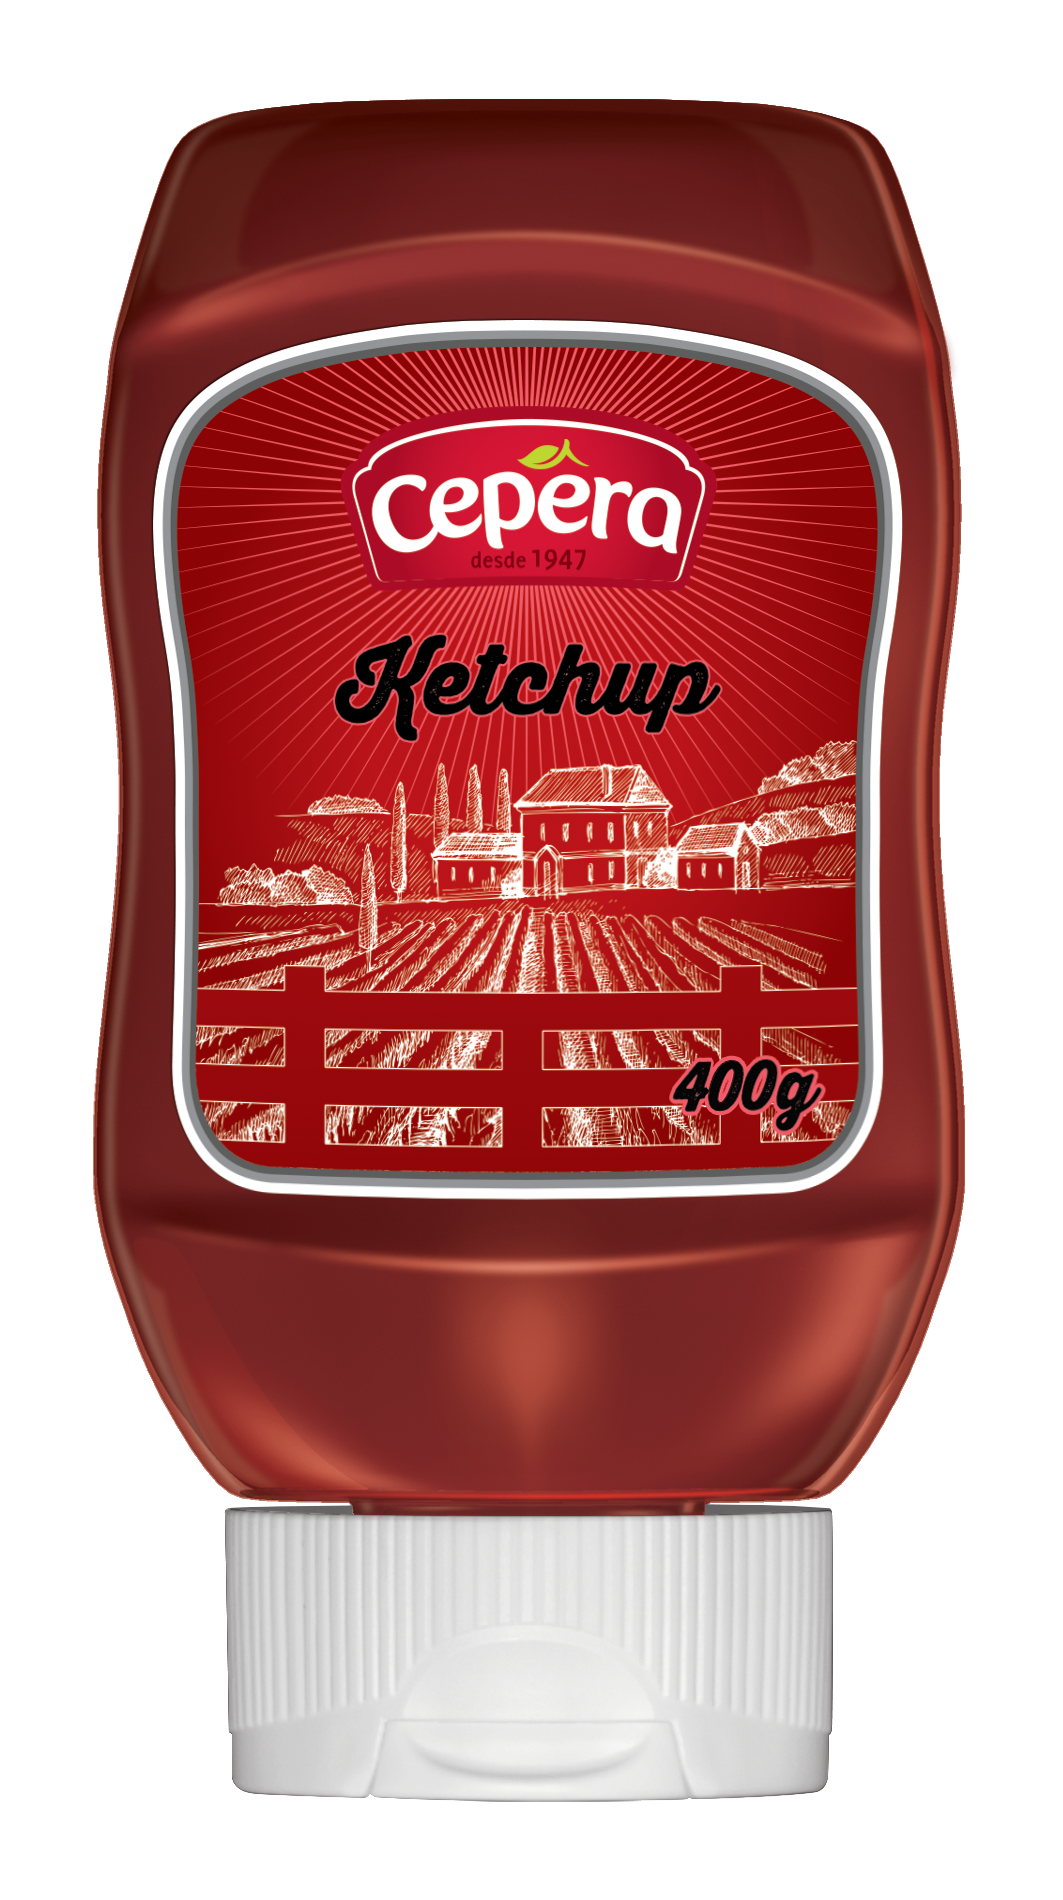 Cepera’s Ketchup